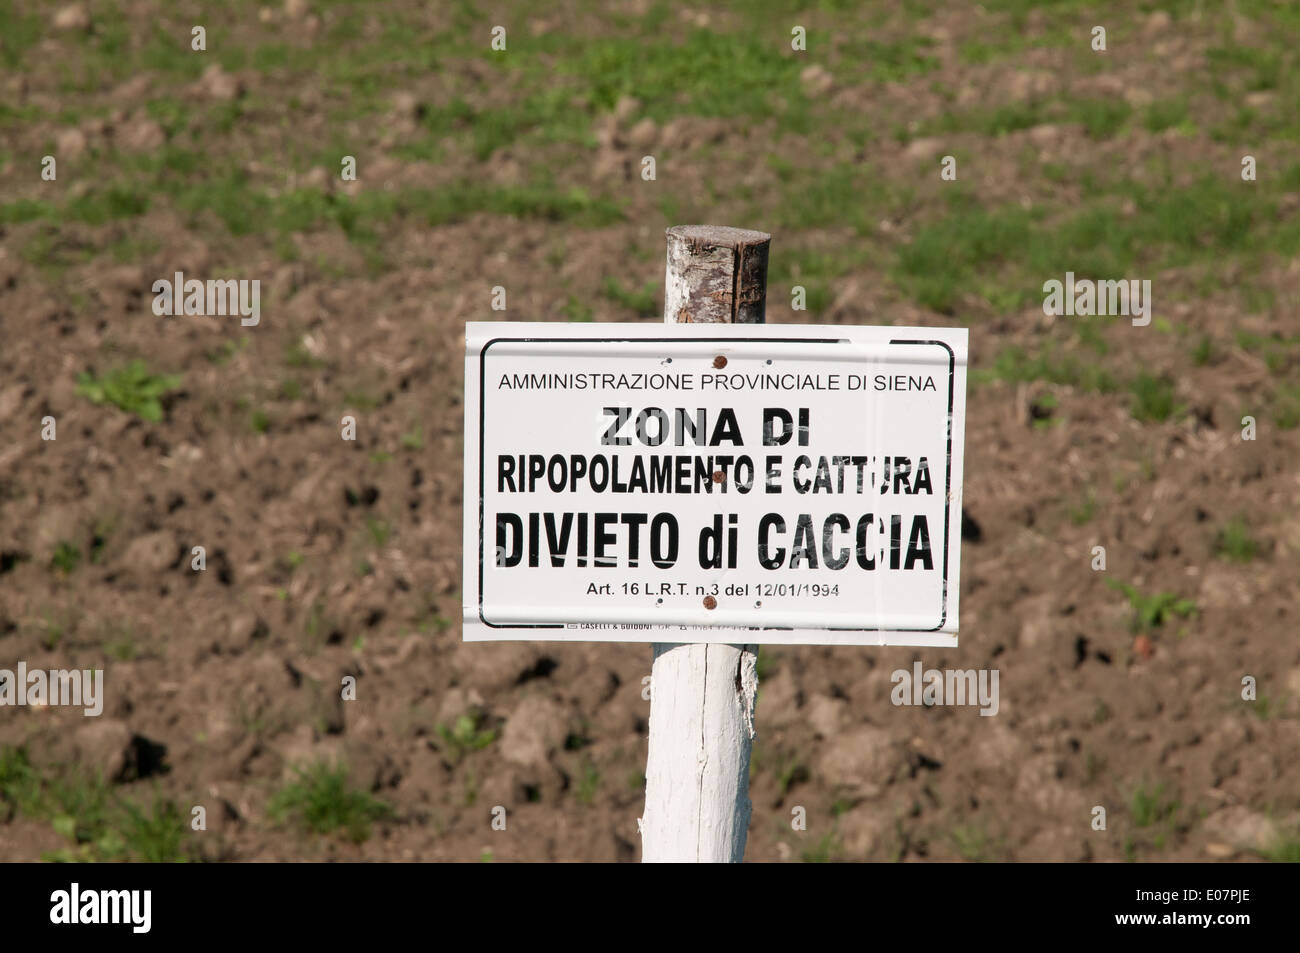 Sign reading ZONA DI REPOPOLAMENTO VIETATO DI CACIA meaning zone of repolpulation hunting forbidden Stock Photo